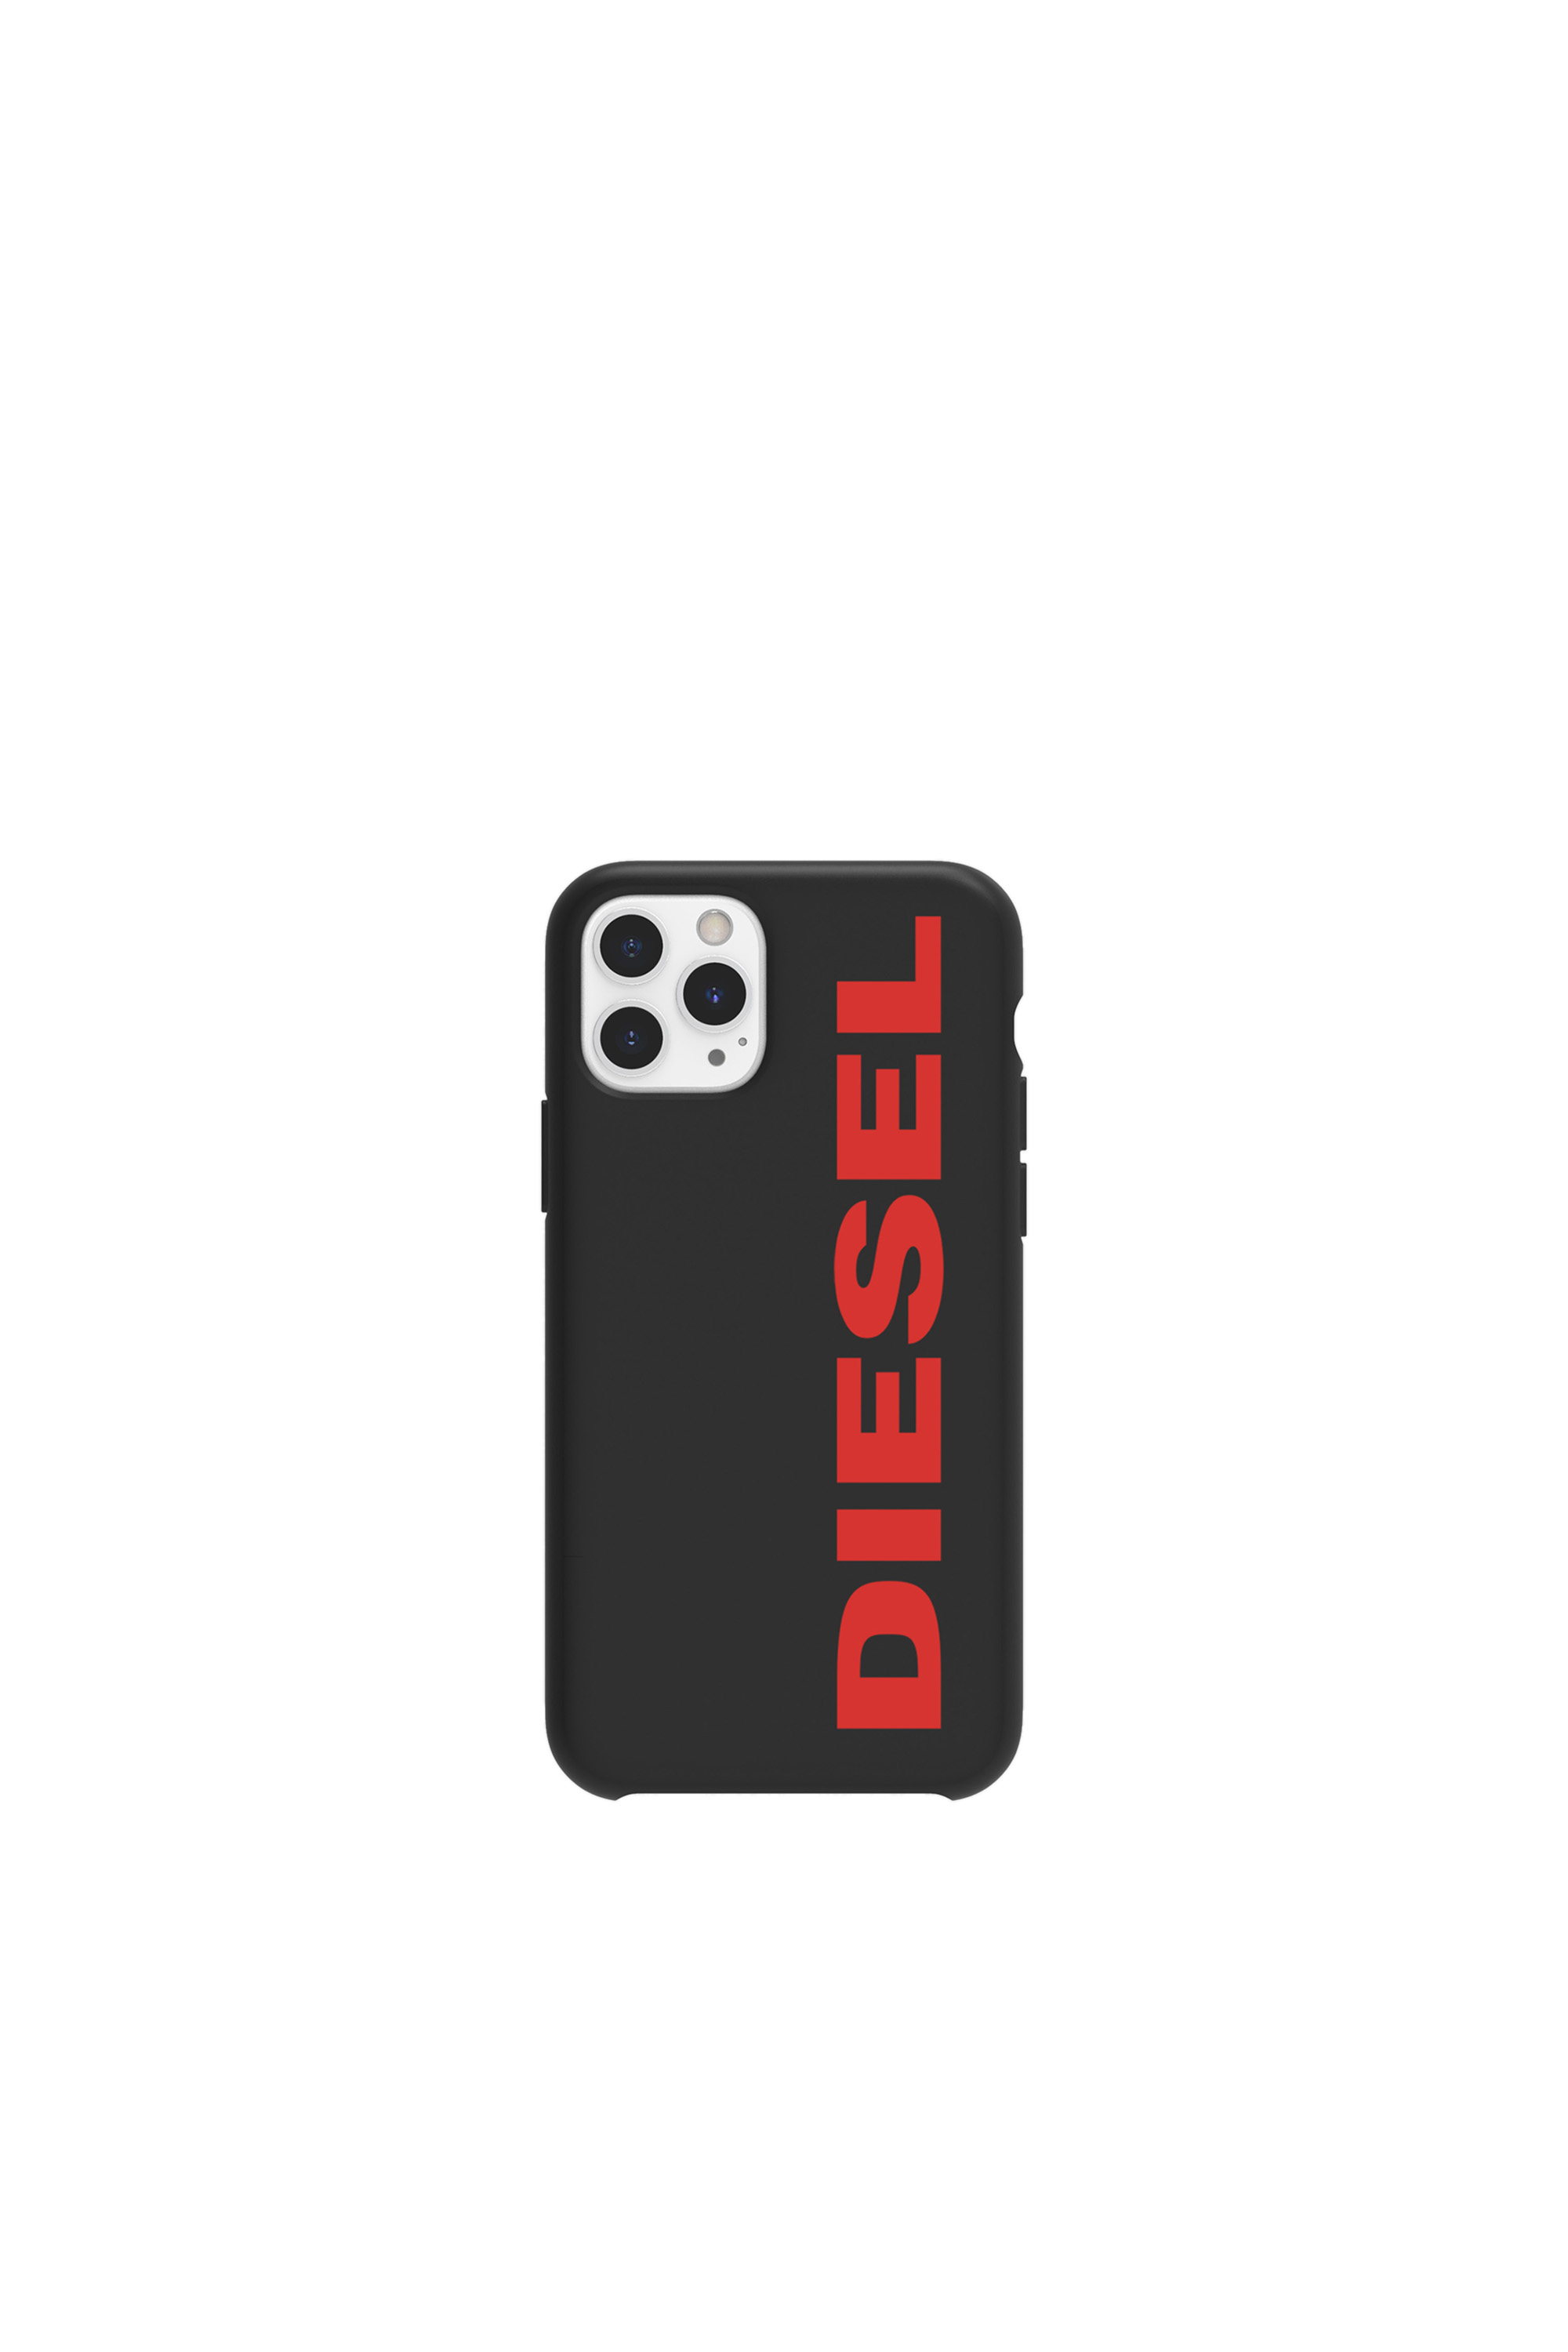 Diesel - DIPH-028-STBR, Black/Red - Image 2